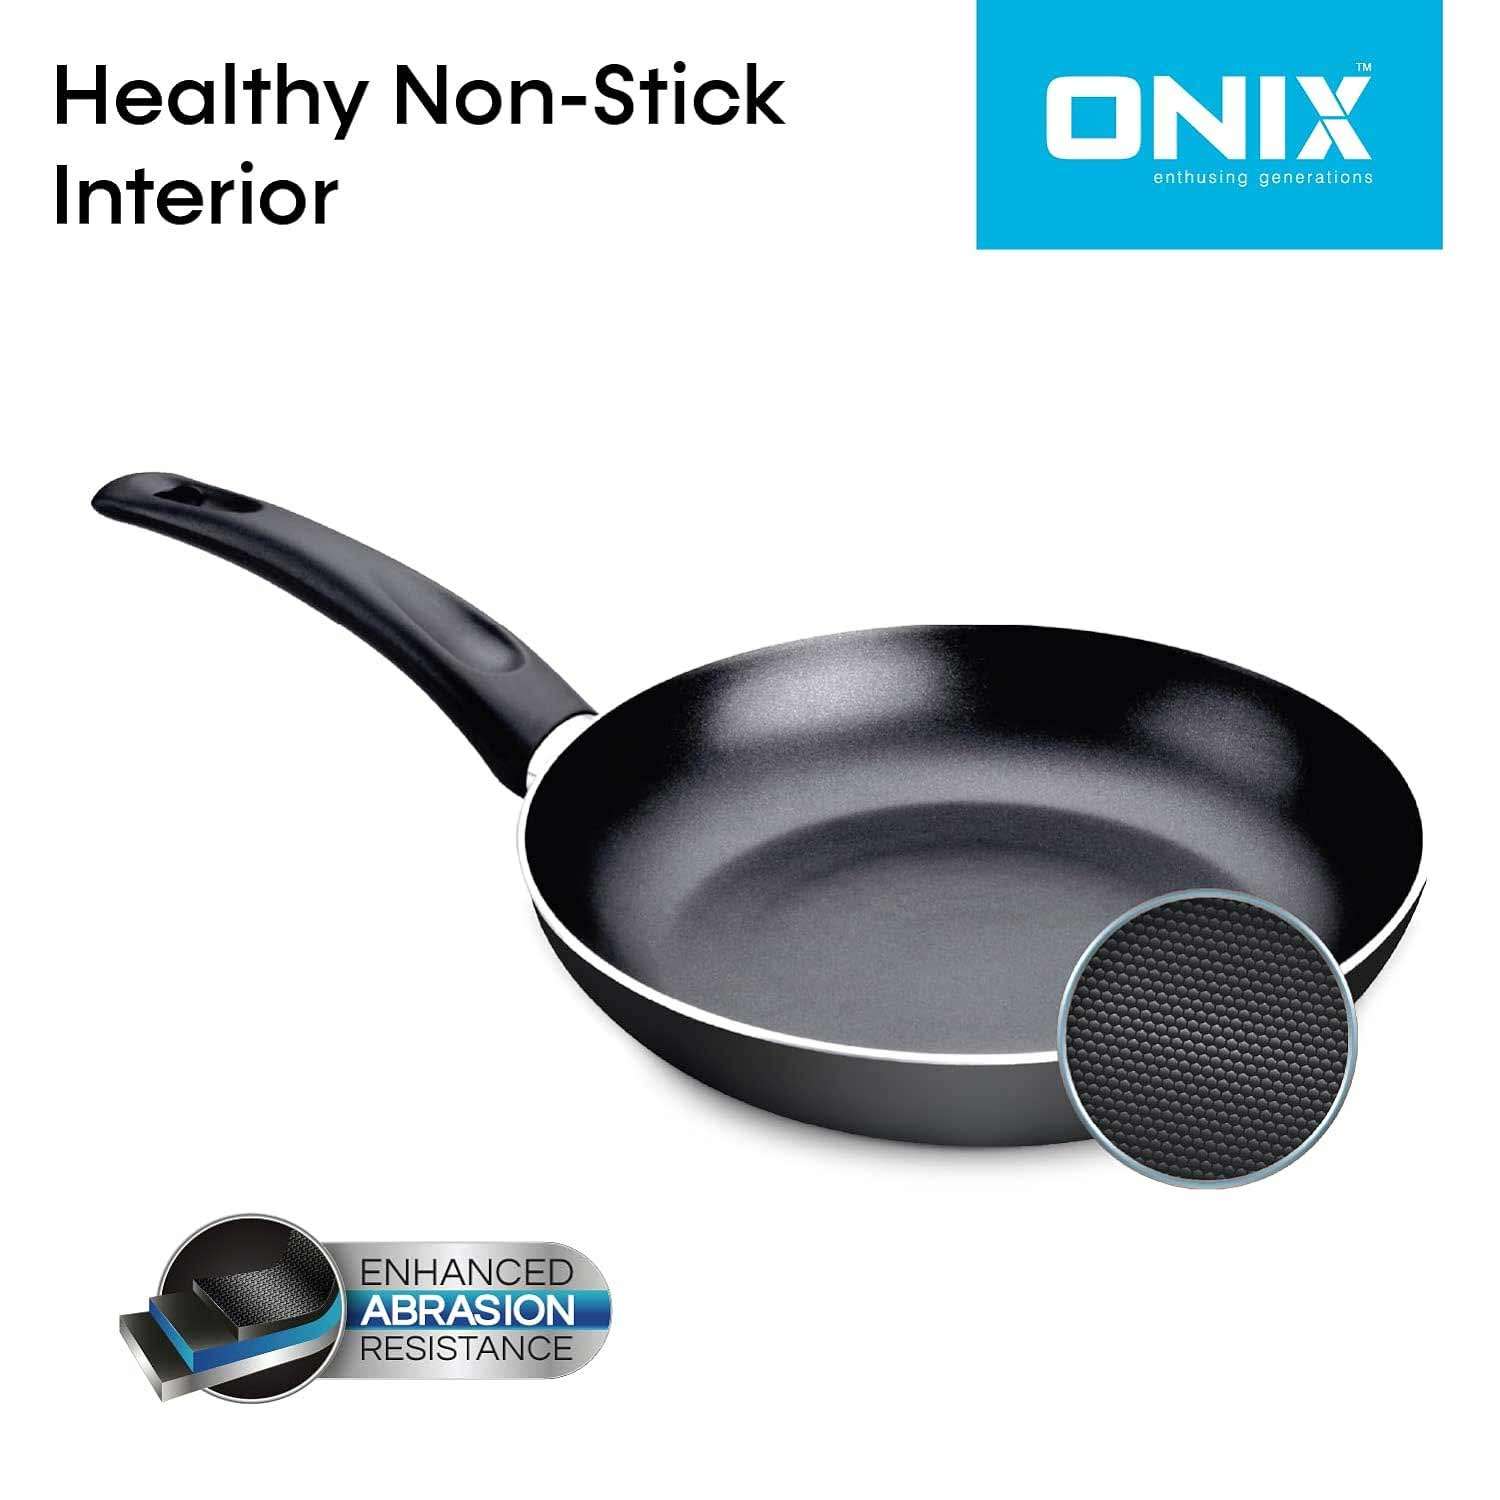 ONIX enthusing generationsIS KTF 444 Nonstick Aluminium Induction Base Cookware Set, Kadai Pan, Tawa Pan, Fry Pan (Black)